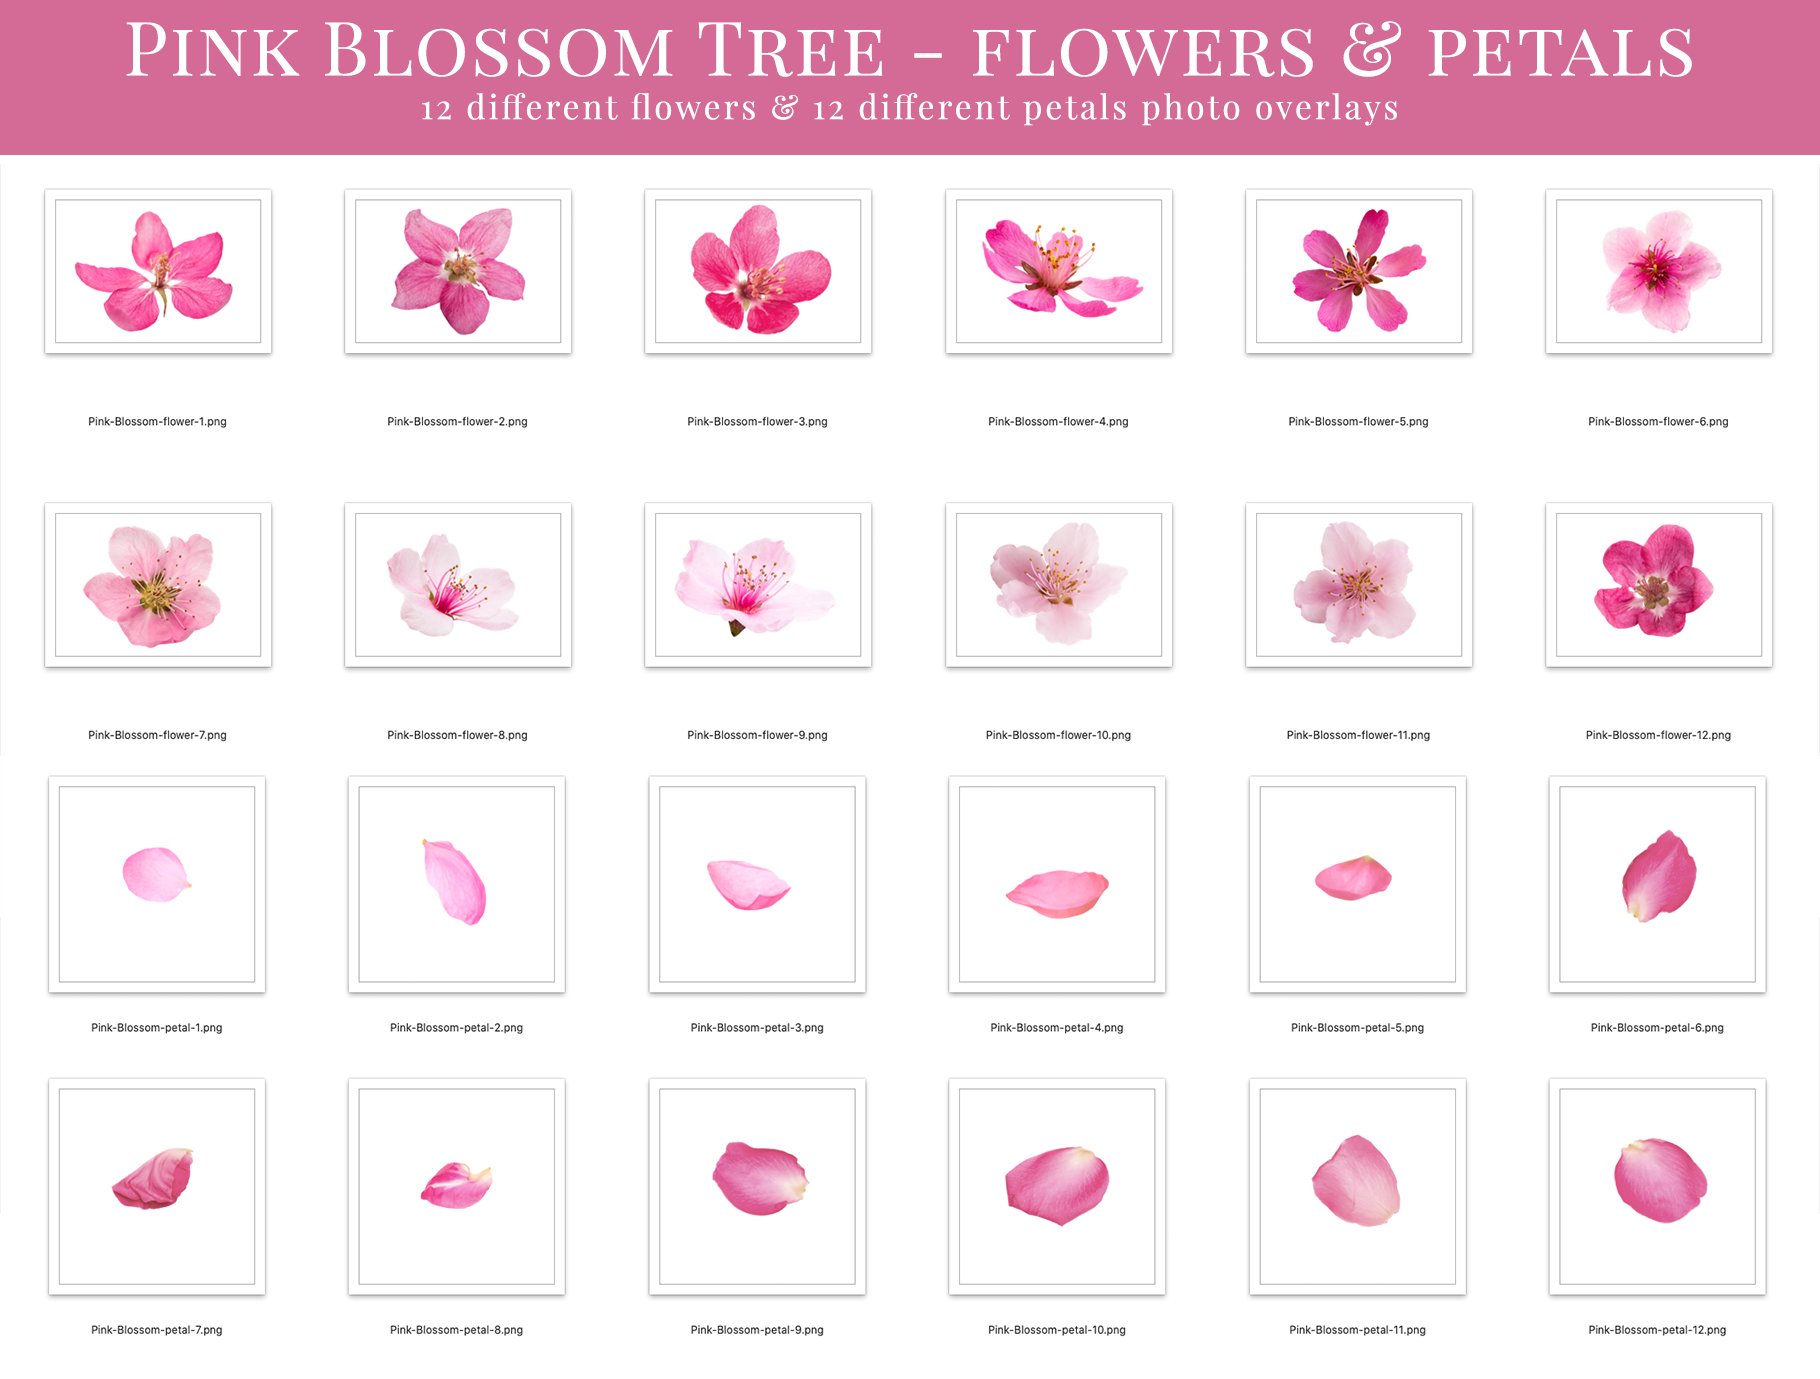 pink blossom tree photo overlays flowerspetals 237